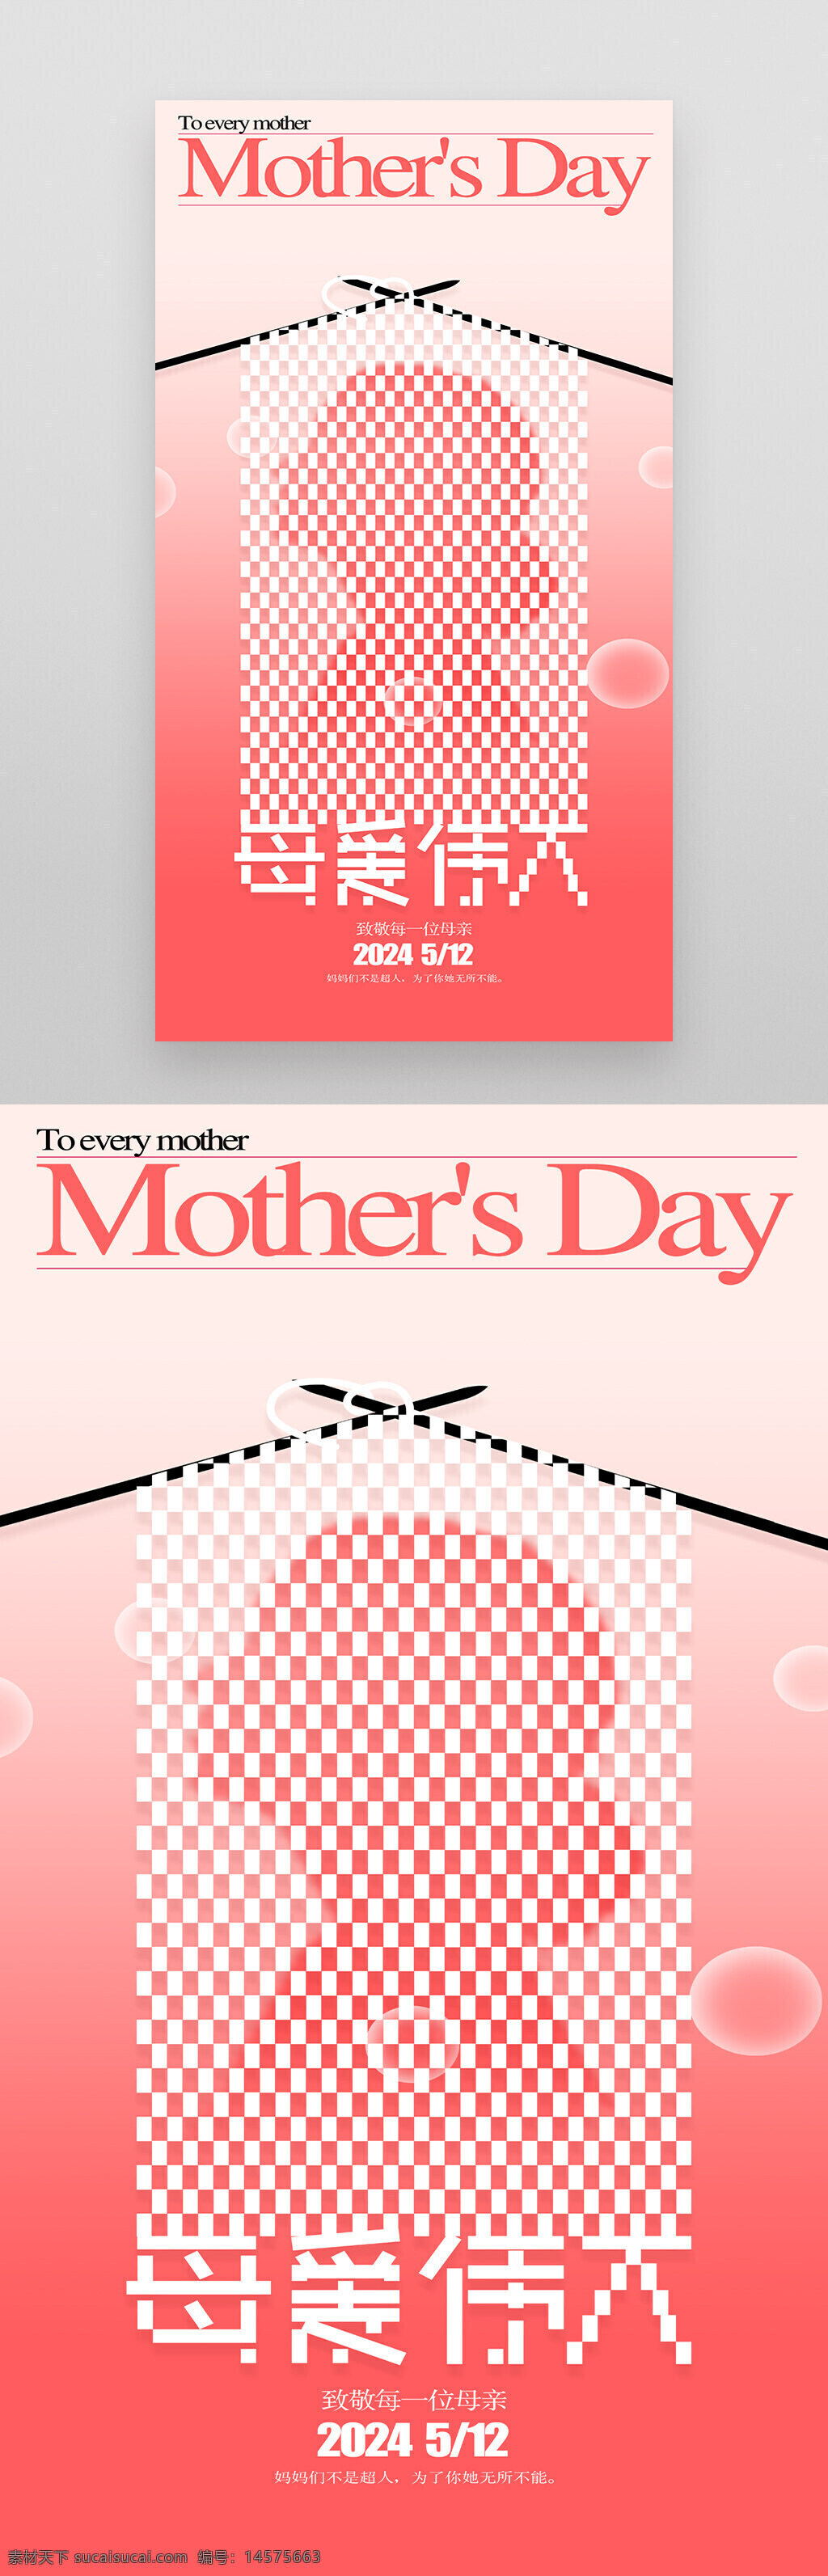 母亲节设计 母亲节促销 母亲节活动 母亲节宣传单 母亲节模板 母亲节 母亲节展板 妈妈节日快乐 母亲节海报 感恩母亲节